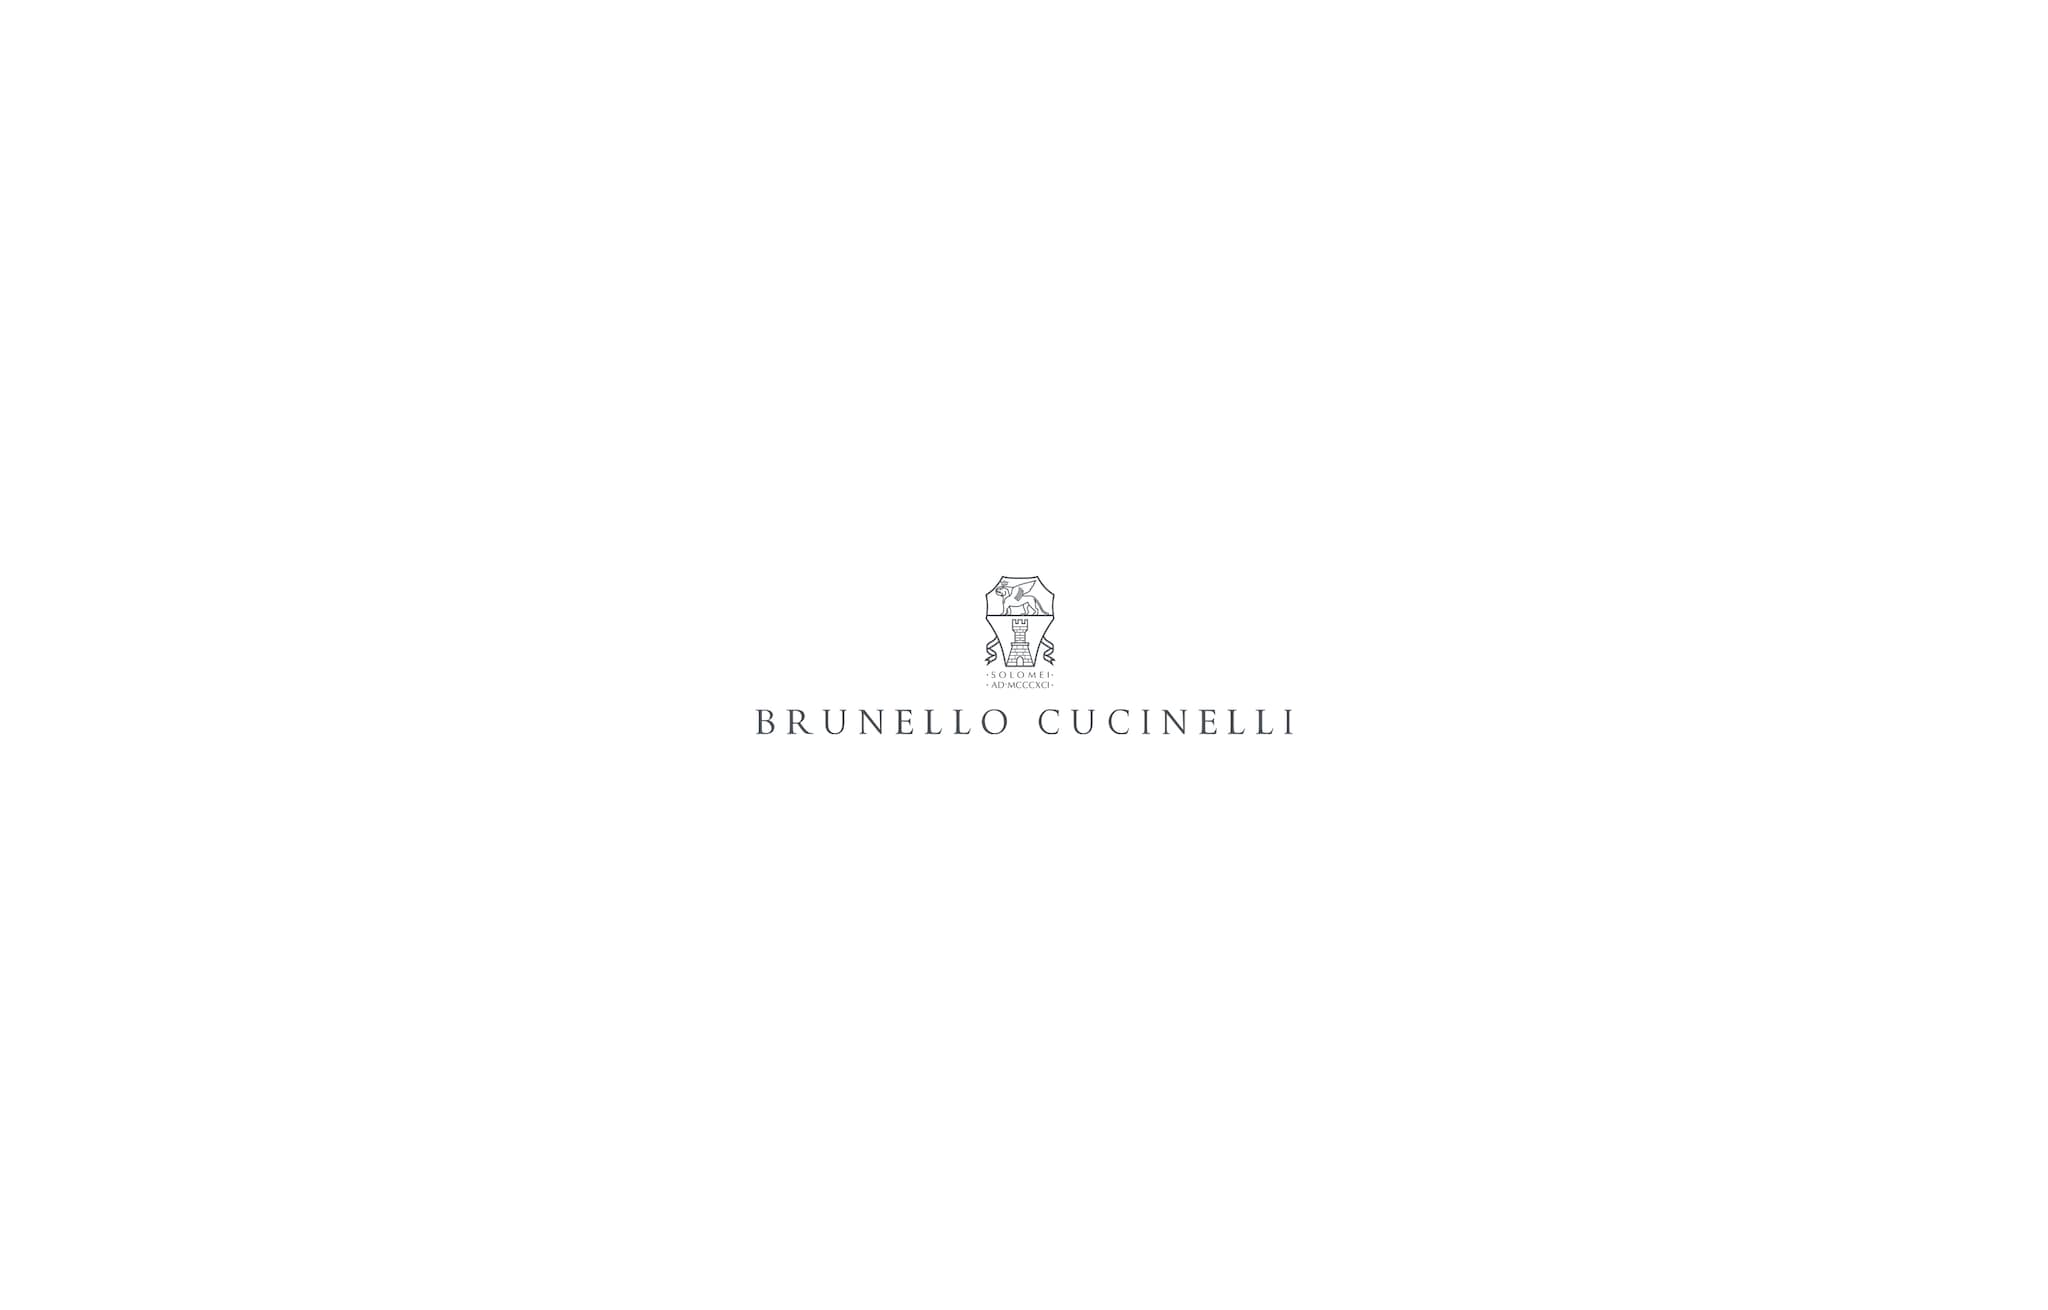  ラメスエード トレンチコート シルバー レディース - Brunello Cucinelli 